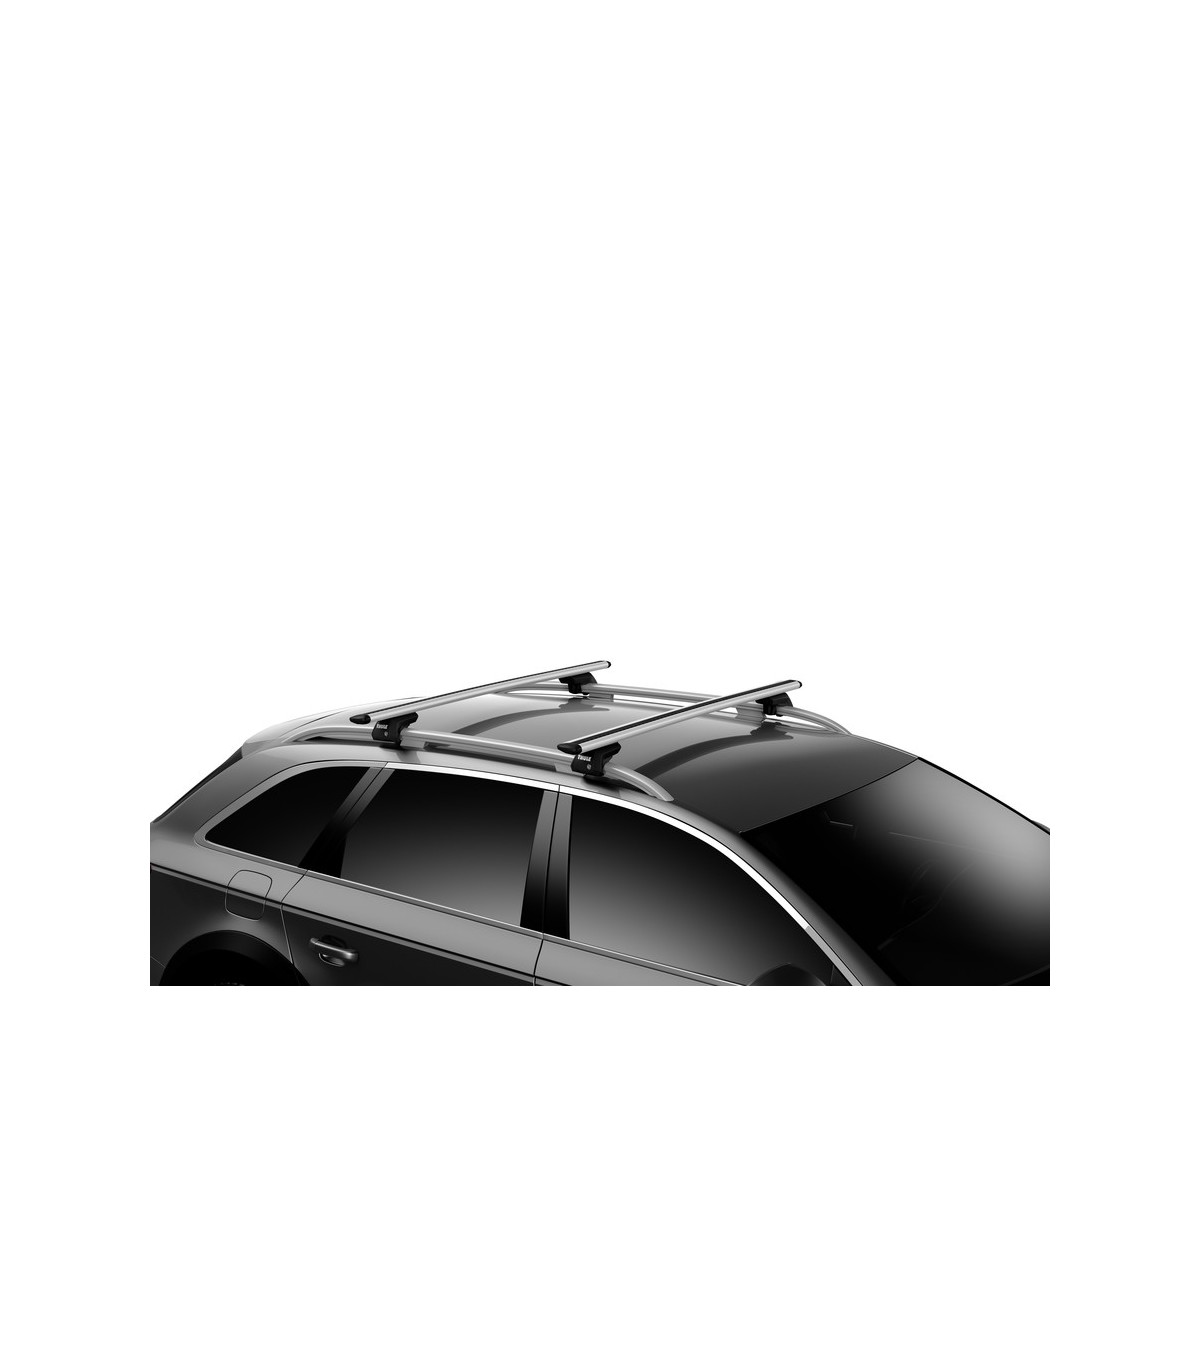 Fantasía pastel intimidad Mercedes GLC - Comprar barras techo ✔️ AutoEkipa